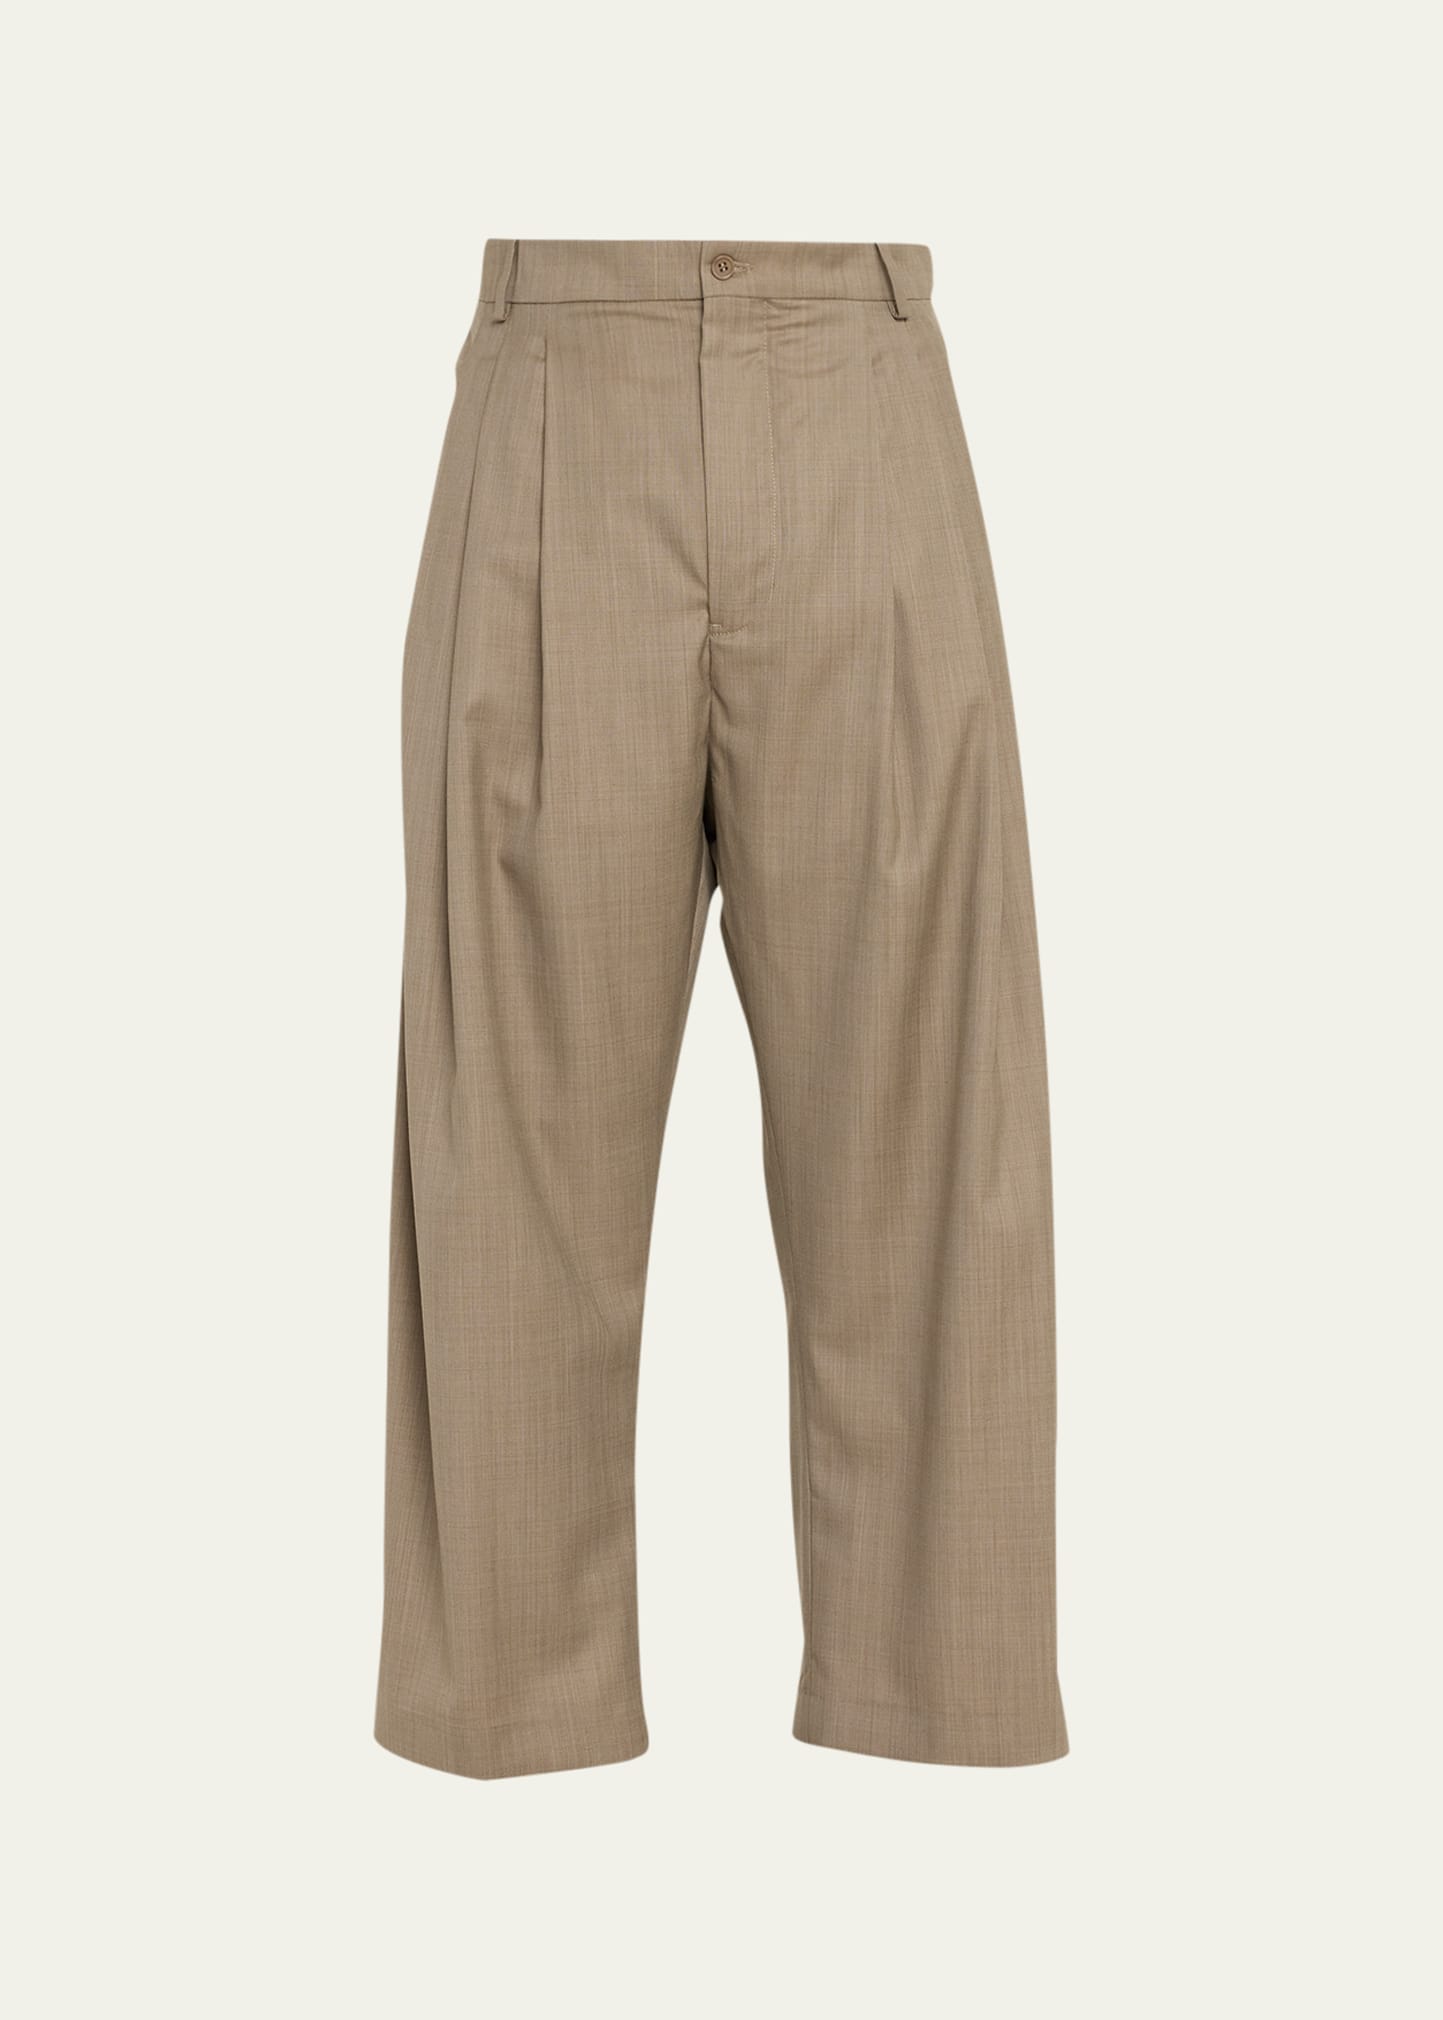 HED MAYNER Pants for Men | ModeSens